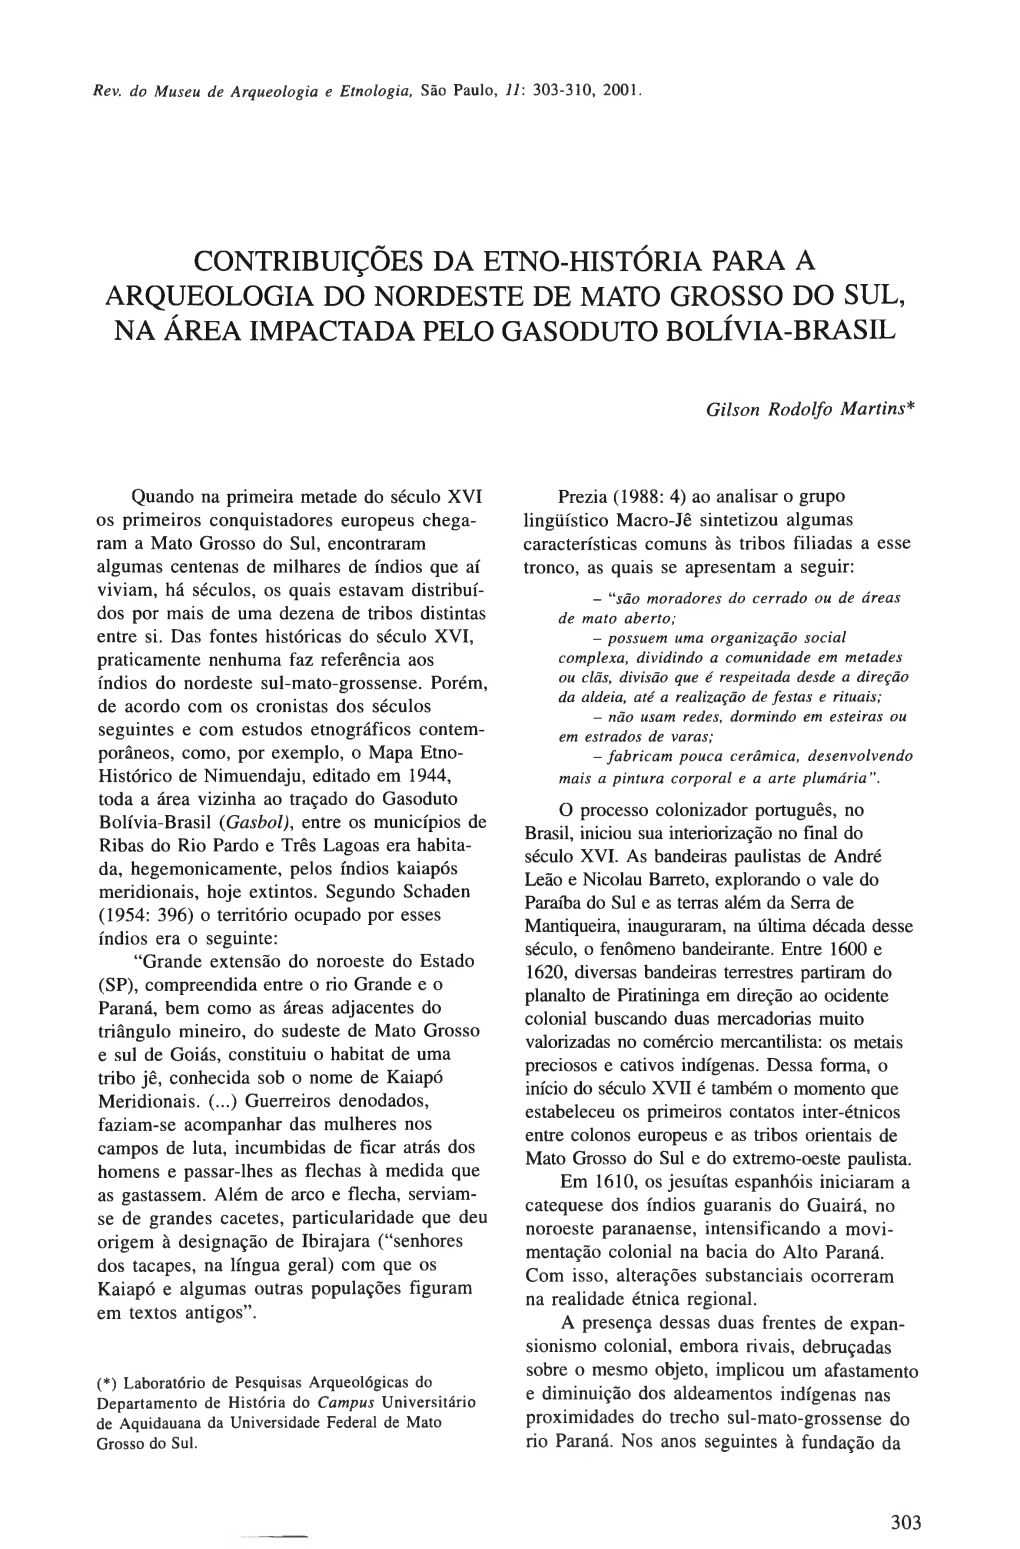 Contribuições Da Etno-História Para a Arqueologia Do Nordeste De Mato Grosso Do Sul, Na Área Impactada Pelo Gasoduto Bolívia-Brasil